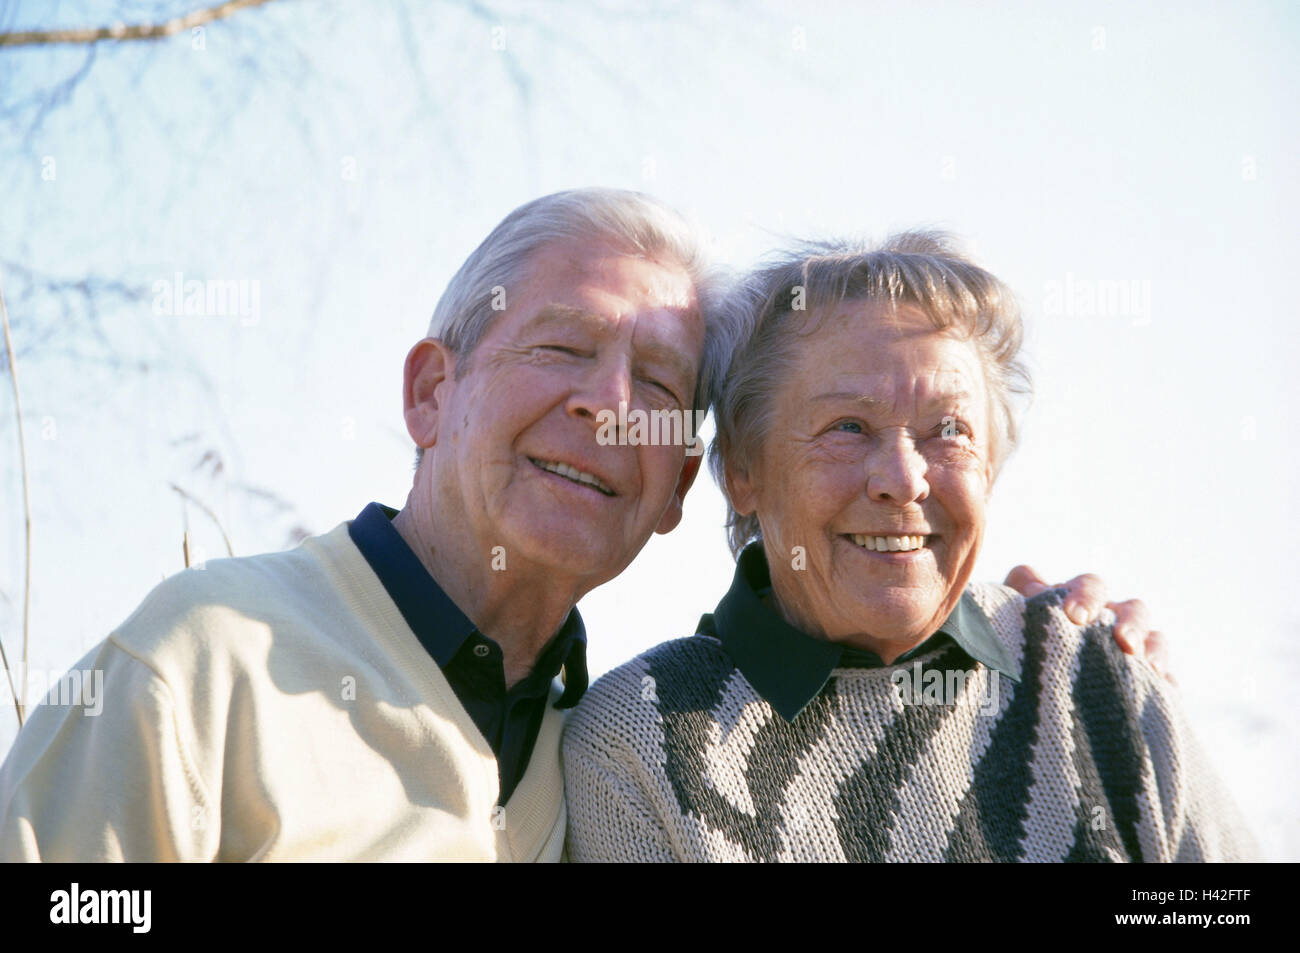 Älteres Paar, verliebt sich, Lächeln, Porträt, 70-80 Jahren, glücklich, Liebe, Zuneigung, Nähe, Gemeinsamkeit, Partnerschaft, Lebensfreude, unbeschwerte Natur genießen, gemeinsam, Erholung, Freizeit, draußen, Zärtlichkeit Stockfoto